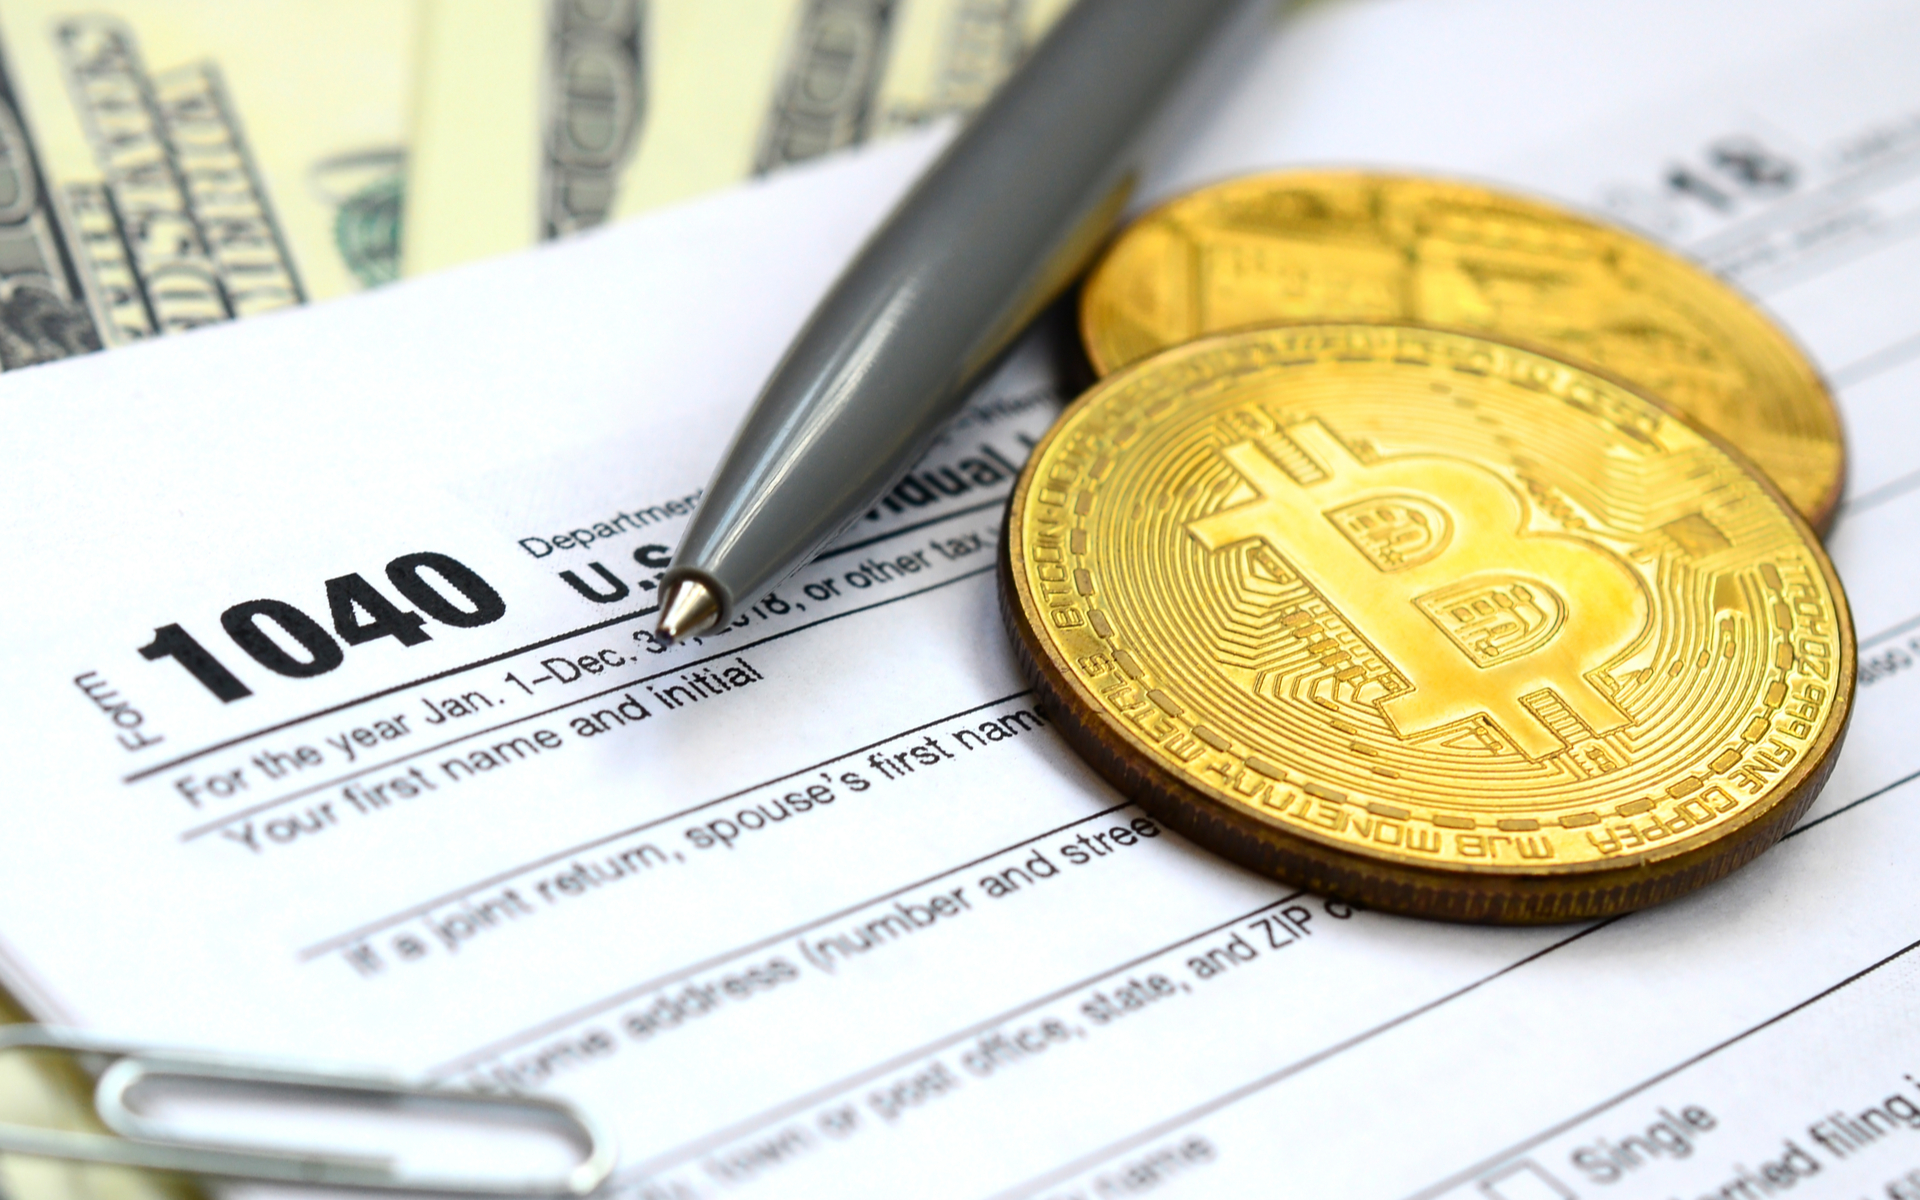 Capital gains taxes on Bitcoin